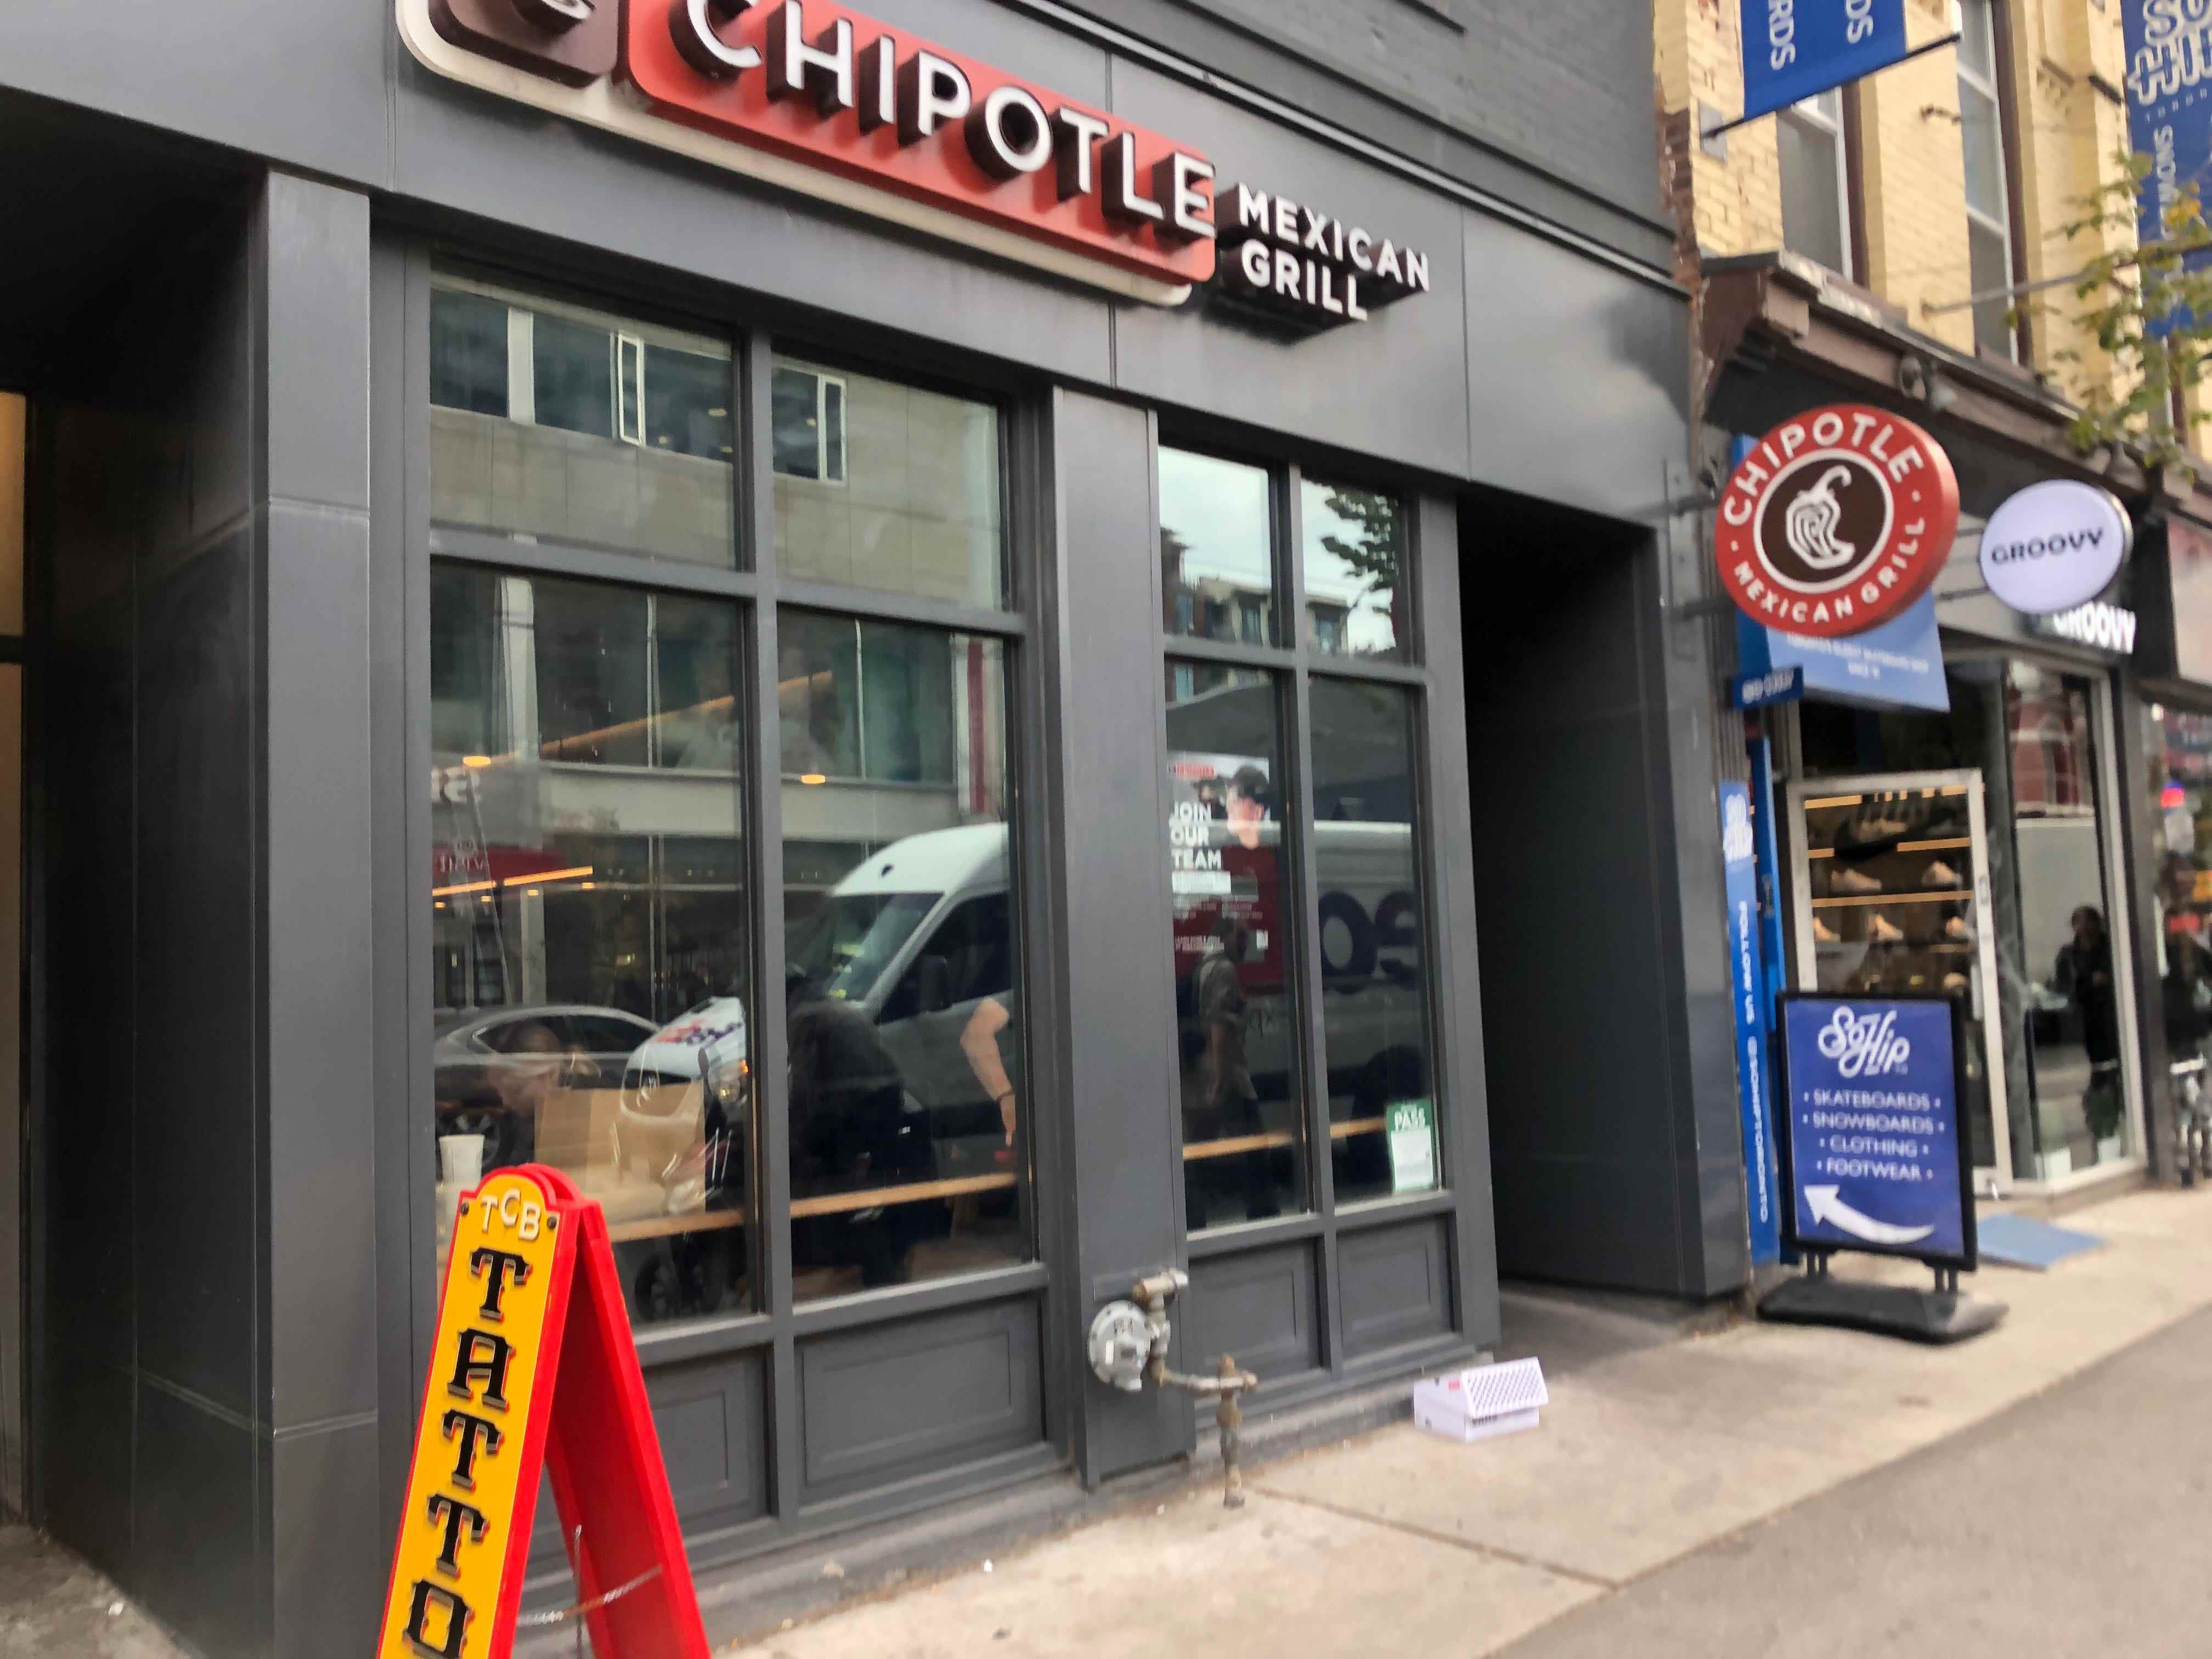 Außenaufnahme eines Chipotle-Restaurants in Toronto, Kanada